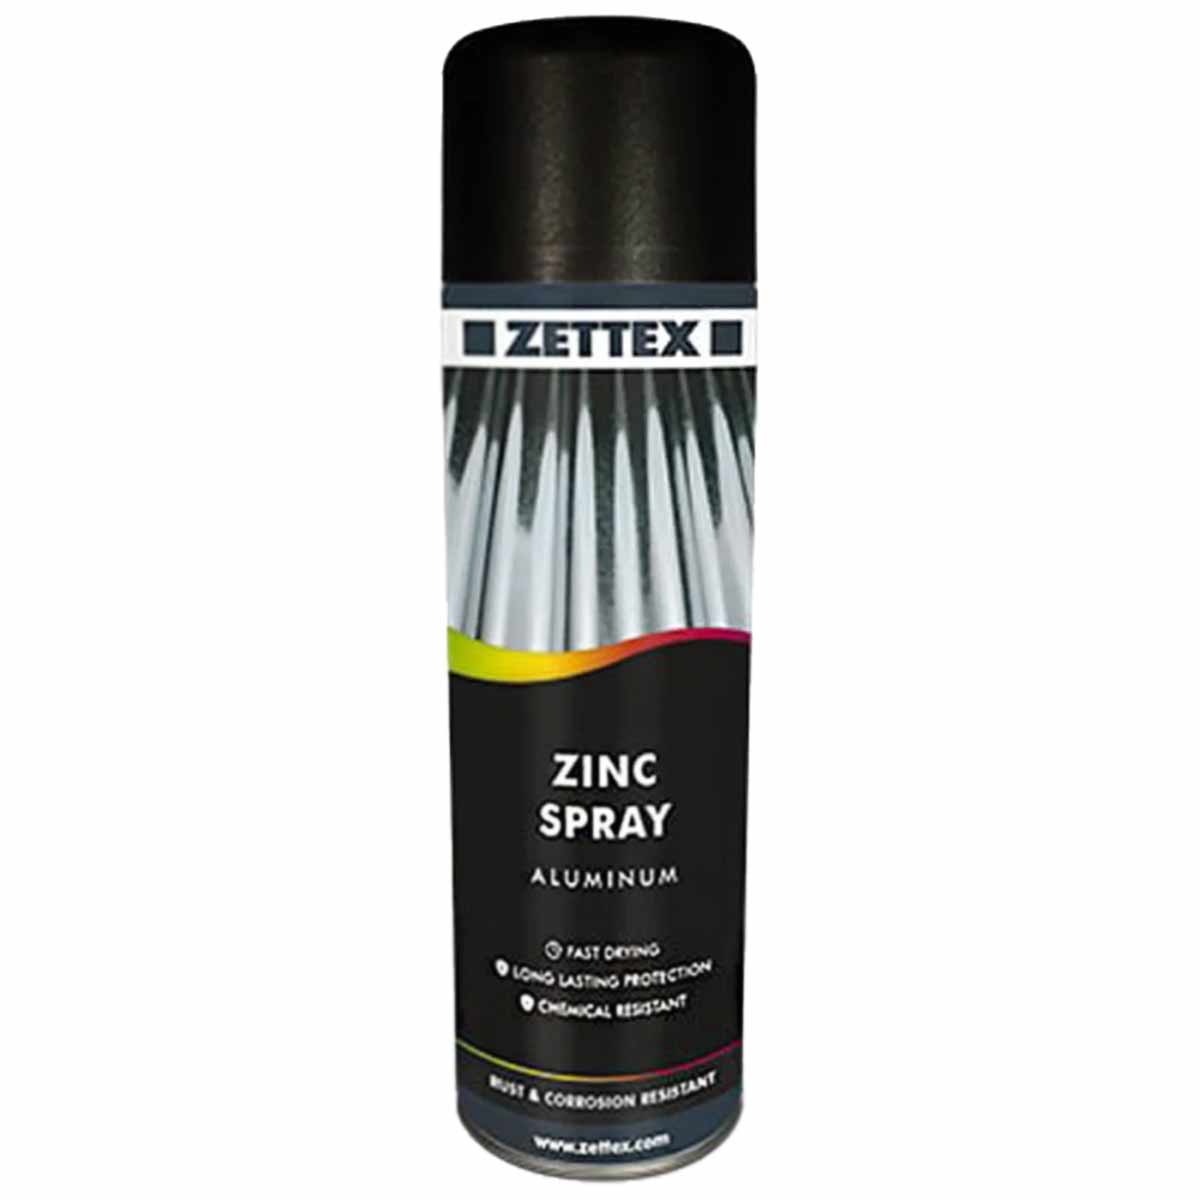 اسپری محافظتی روی زتکس Zettex Zinc Spray